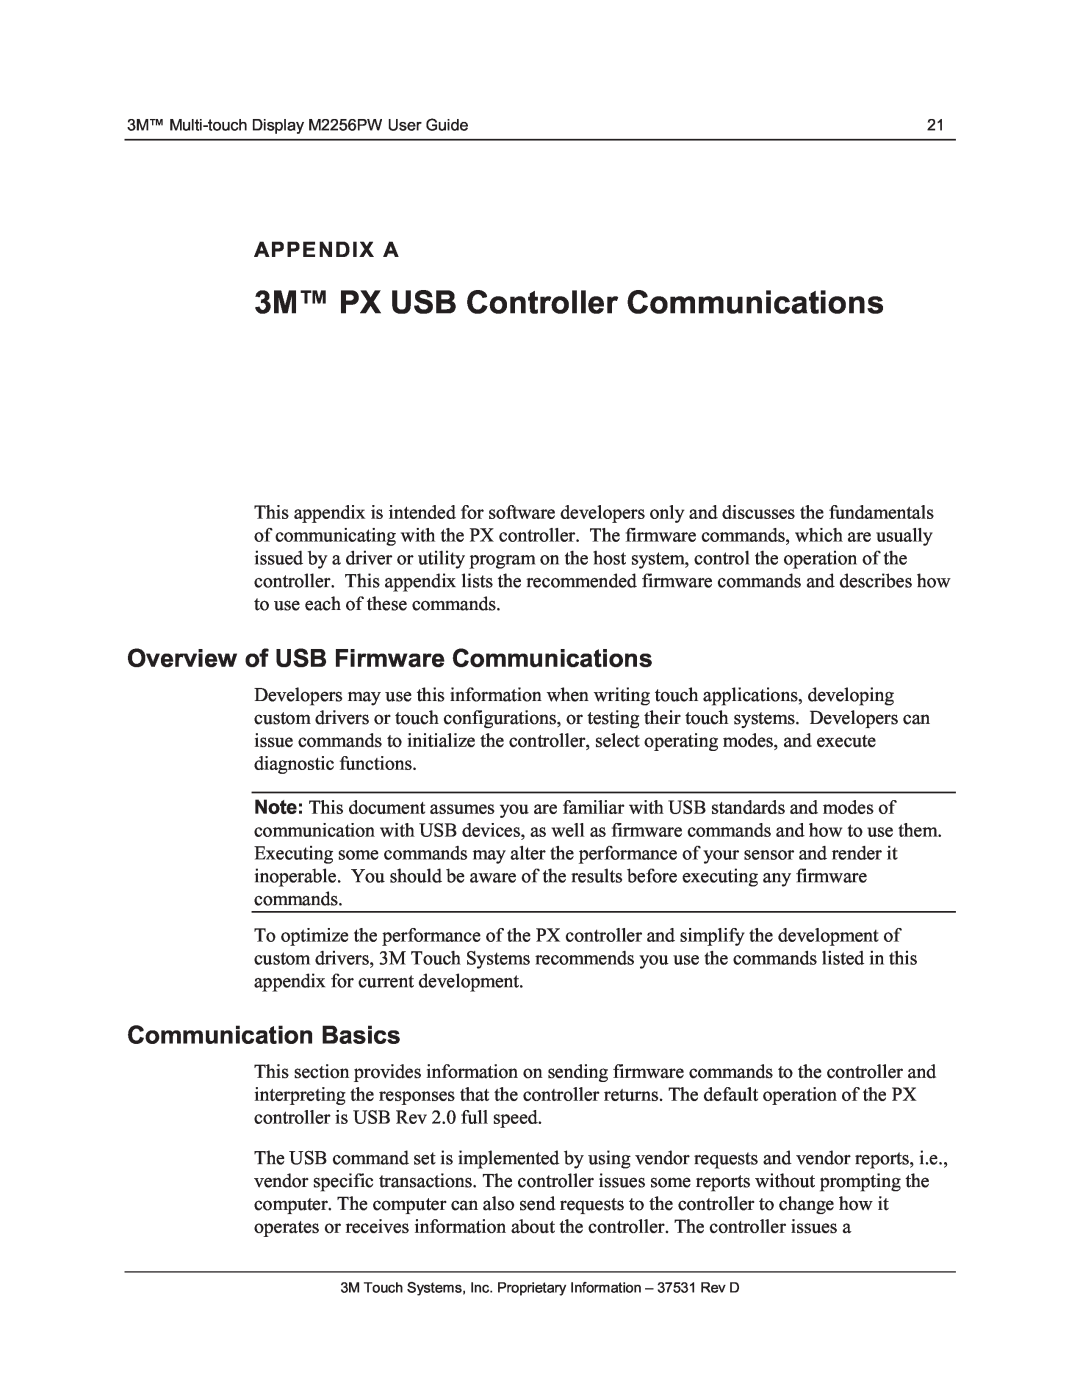 3M M2256PW 3M PX USB Controller Communications, Overview of USB Firmware Communications, Communication Basics, Appendix A 